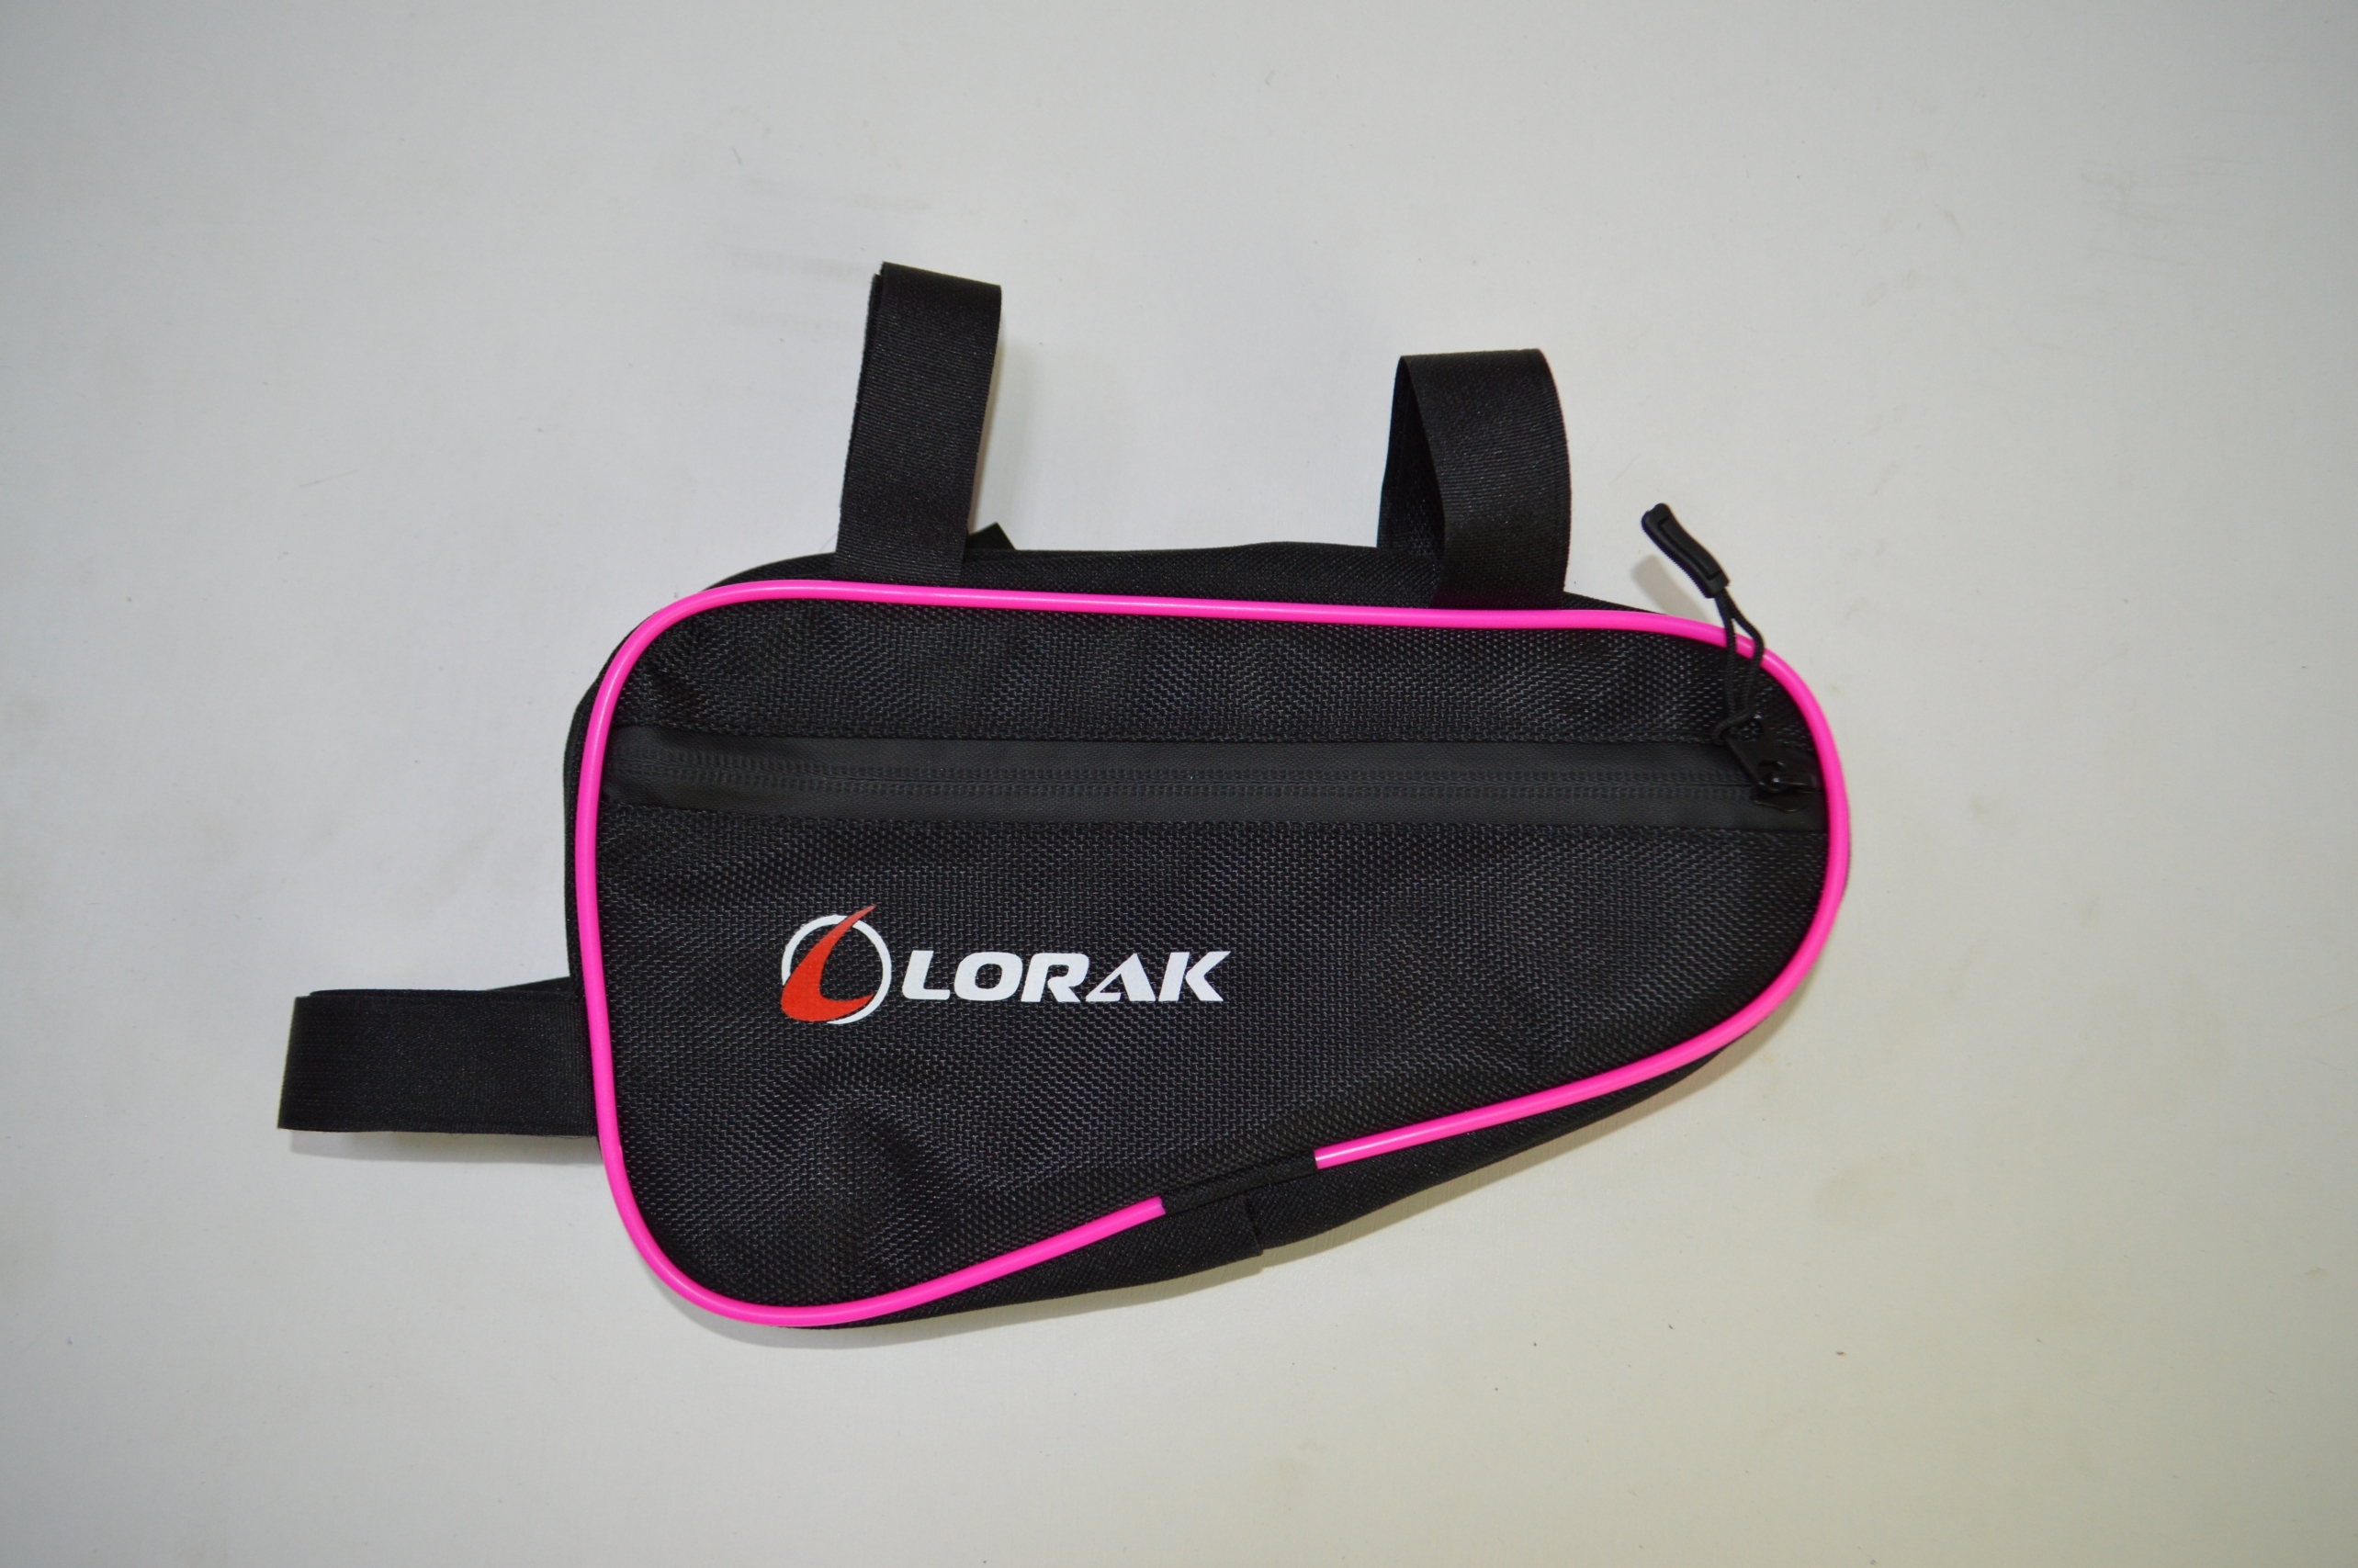 Сумка Lorak 453 под раму 23х12,5х5см черно-розовый, код 45307